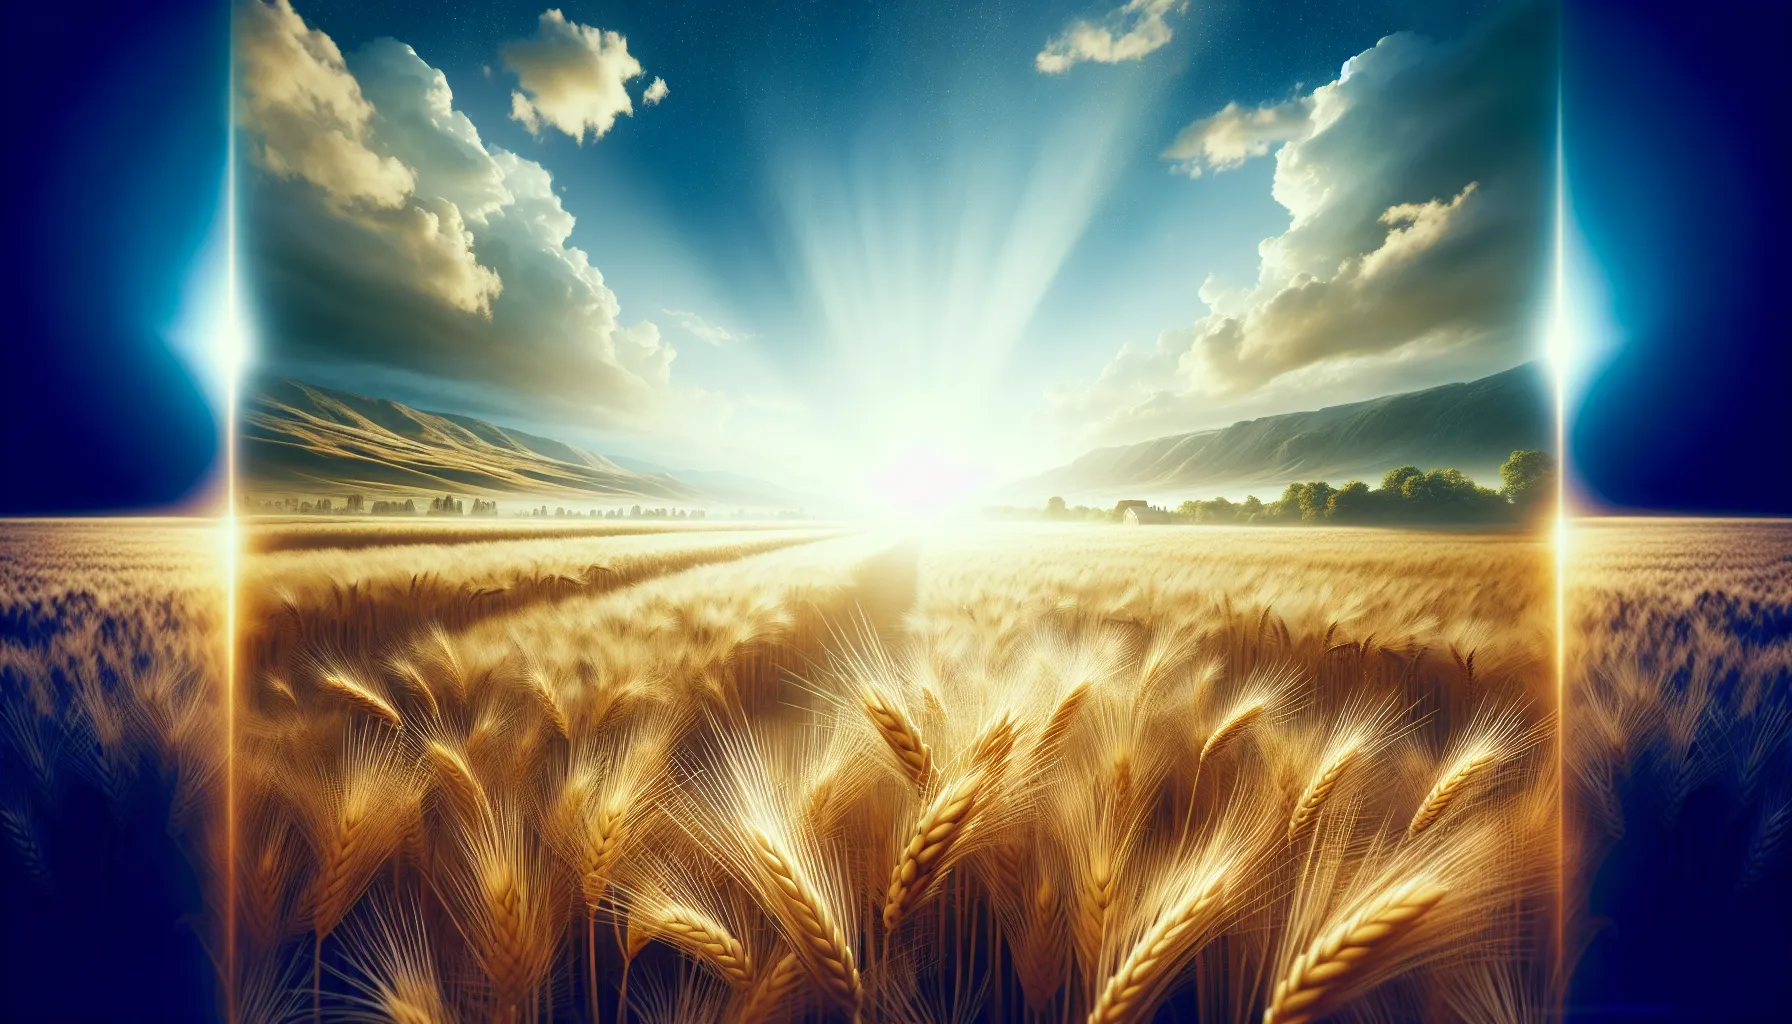 'Imagen de un campo de cebada bajo el sol, representa la historia de lealtad y redención de Rut en la Biblia.'